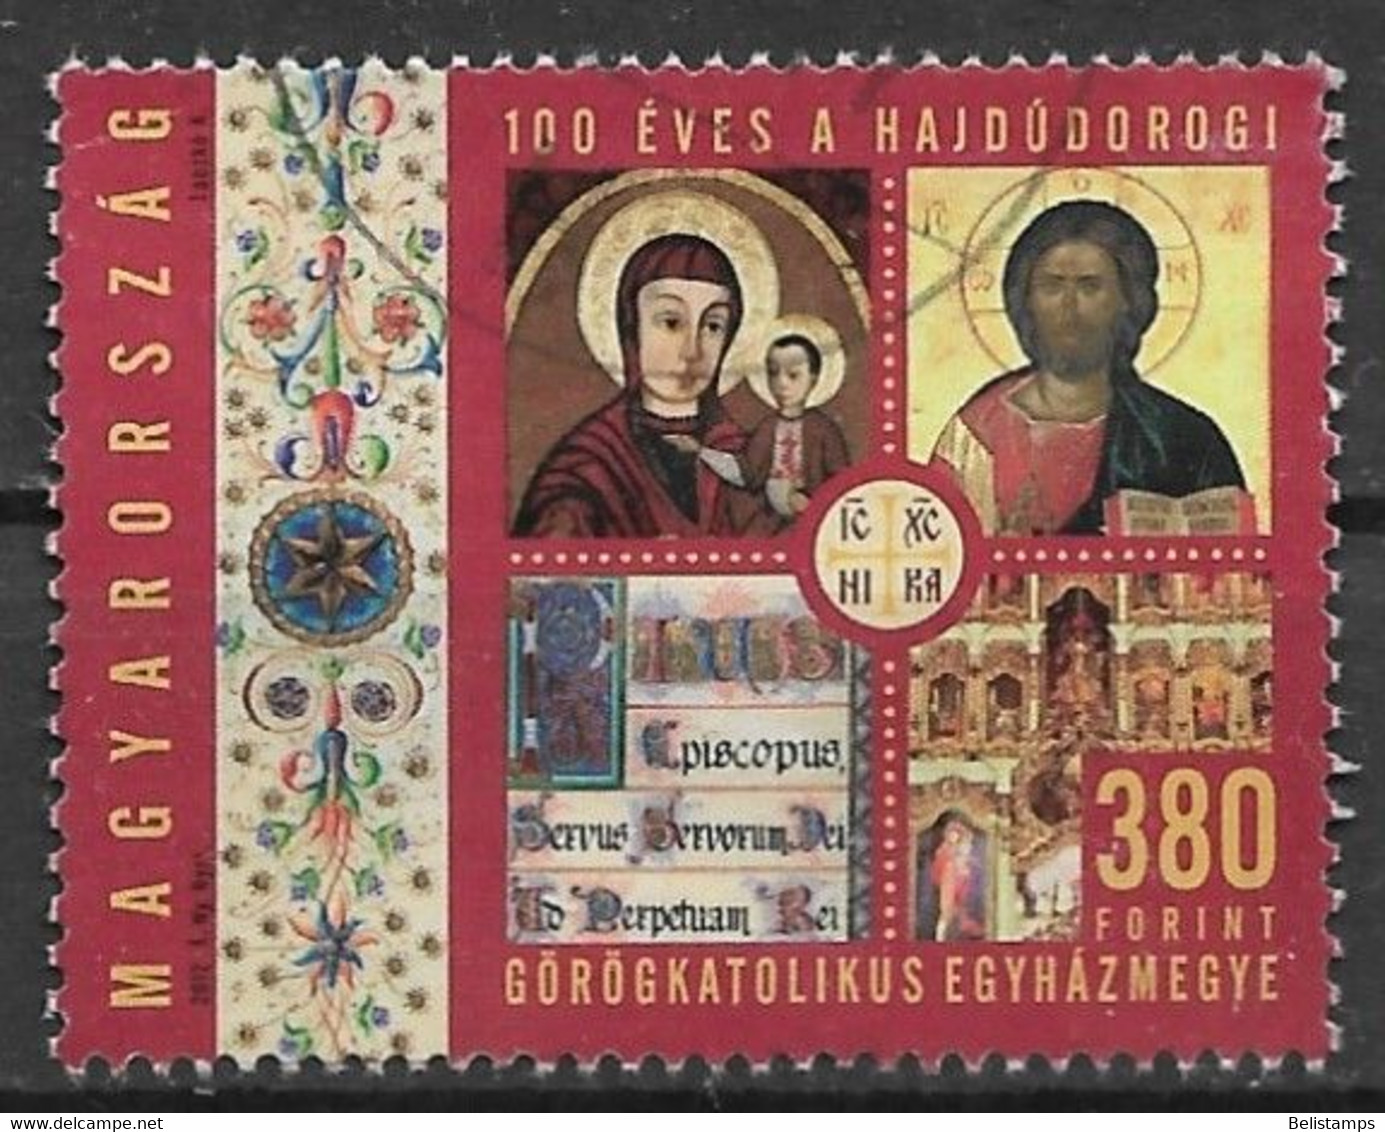 Hungary 2012. Scott #4223 (U) Greek Orthodox Diocese Of Hajdudorog, Cent  *Complete Issue* - Usati